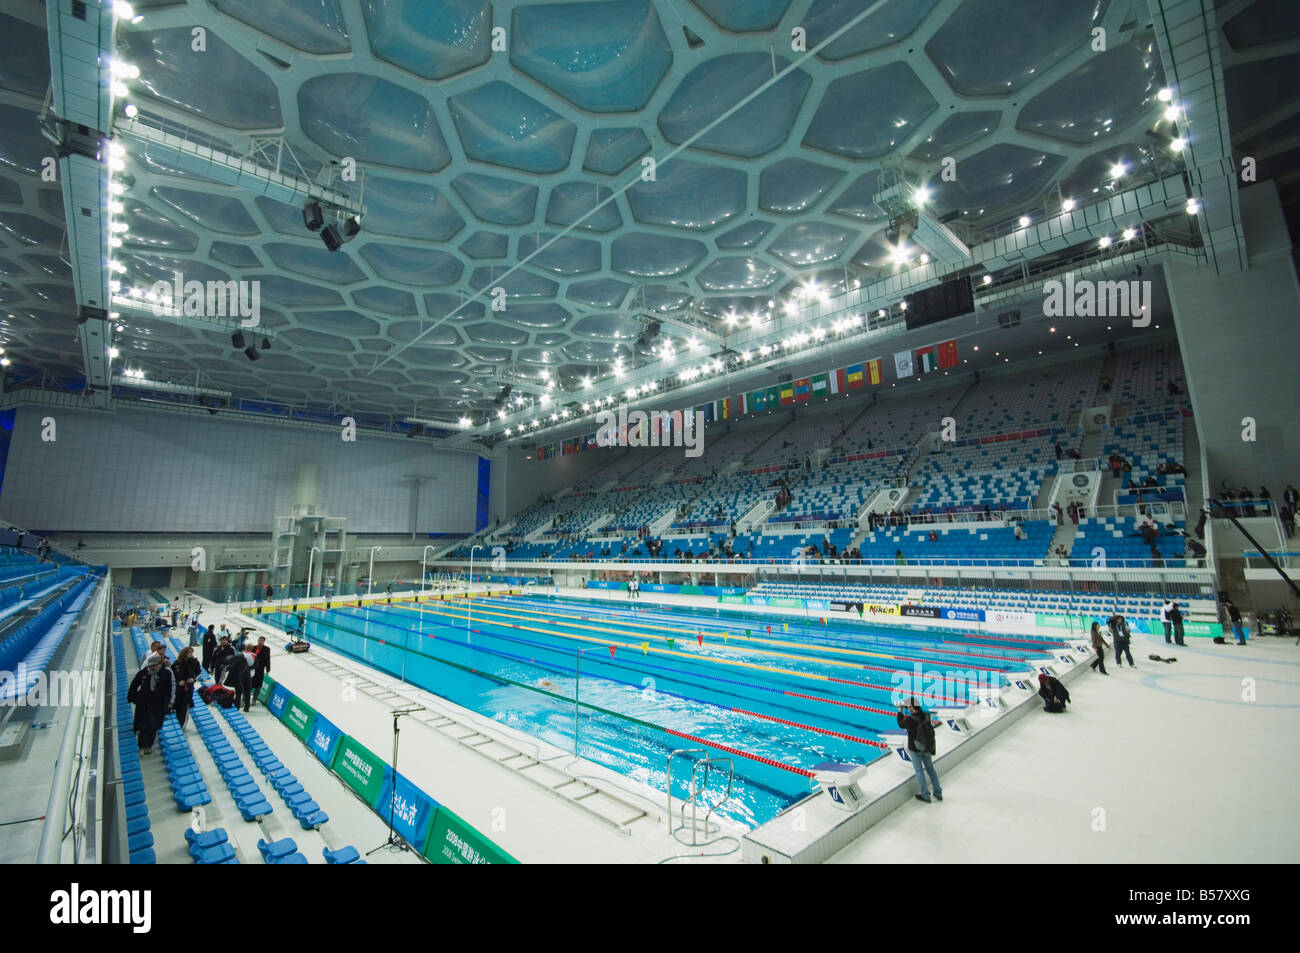 Le cube d'eau Le Centre national de natation natation arena dans le parc olympique, Beijing, China, Asia Banque D'Images